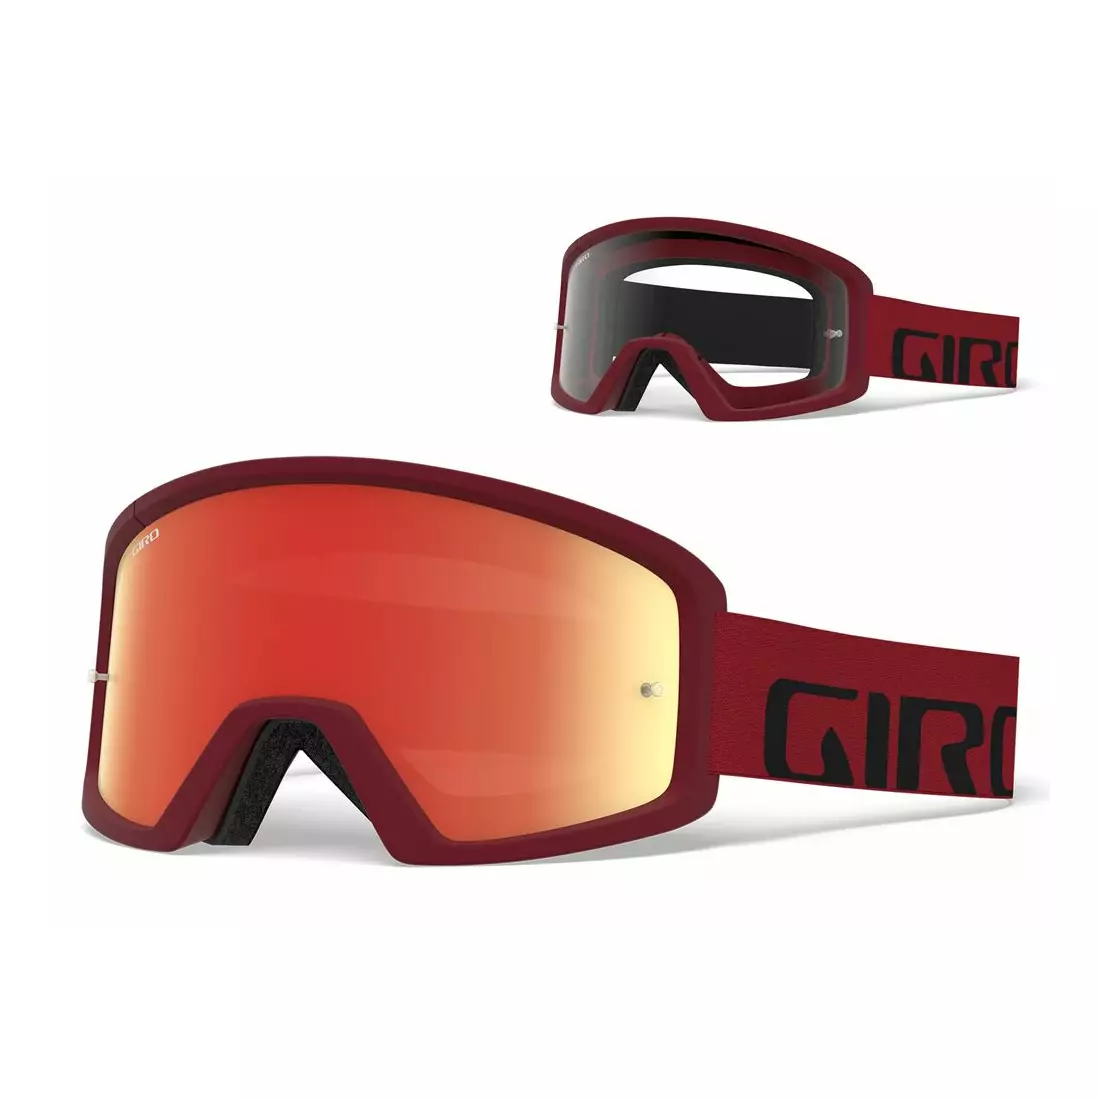 GIRO kerékpár szemüveg tazz mtb red black (Színes üveg VIVID-Carl Zeiss TRAIL + átlátszó üveg 99% S0) GR-7114194